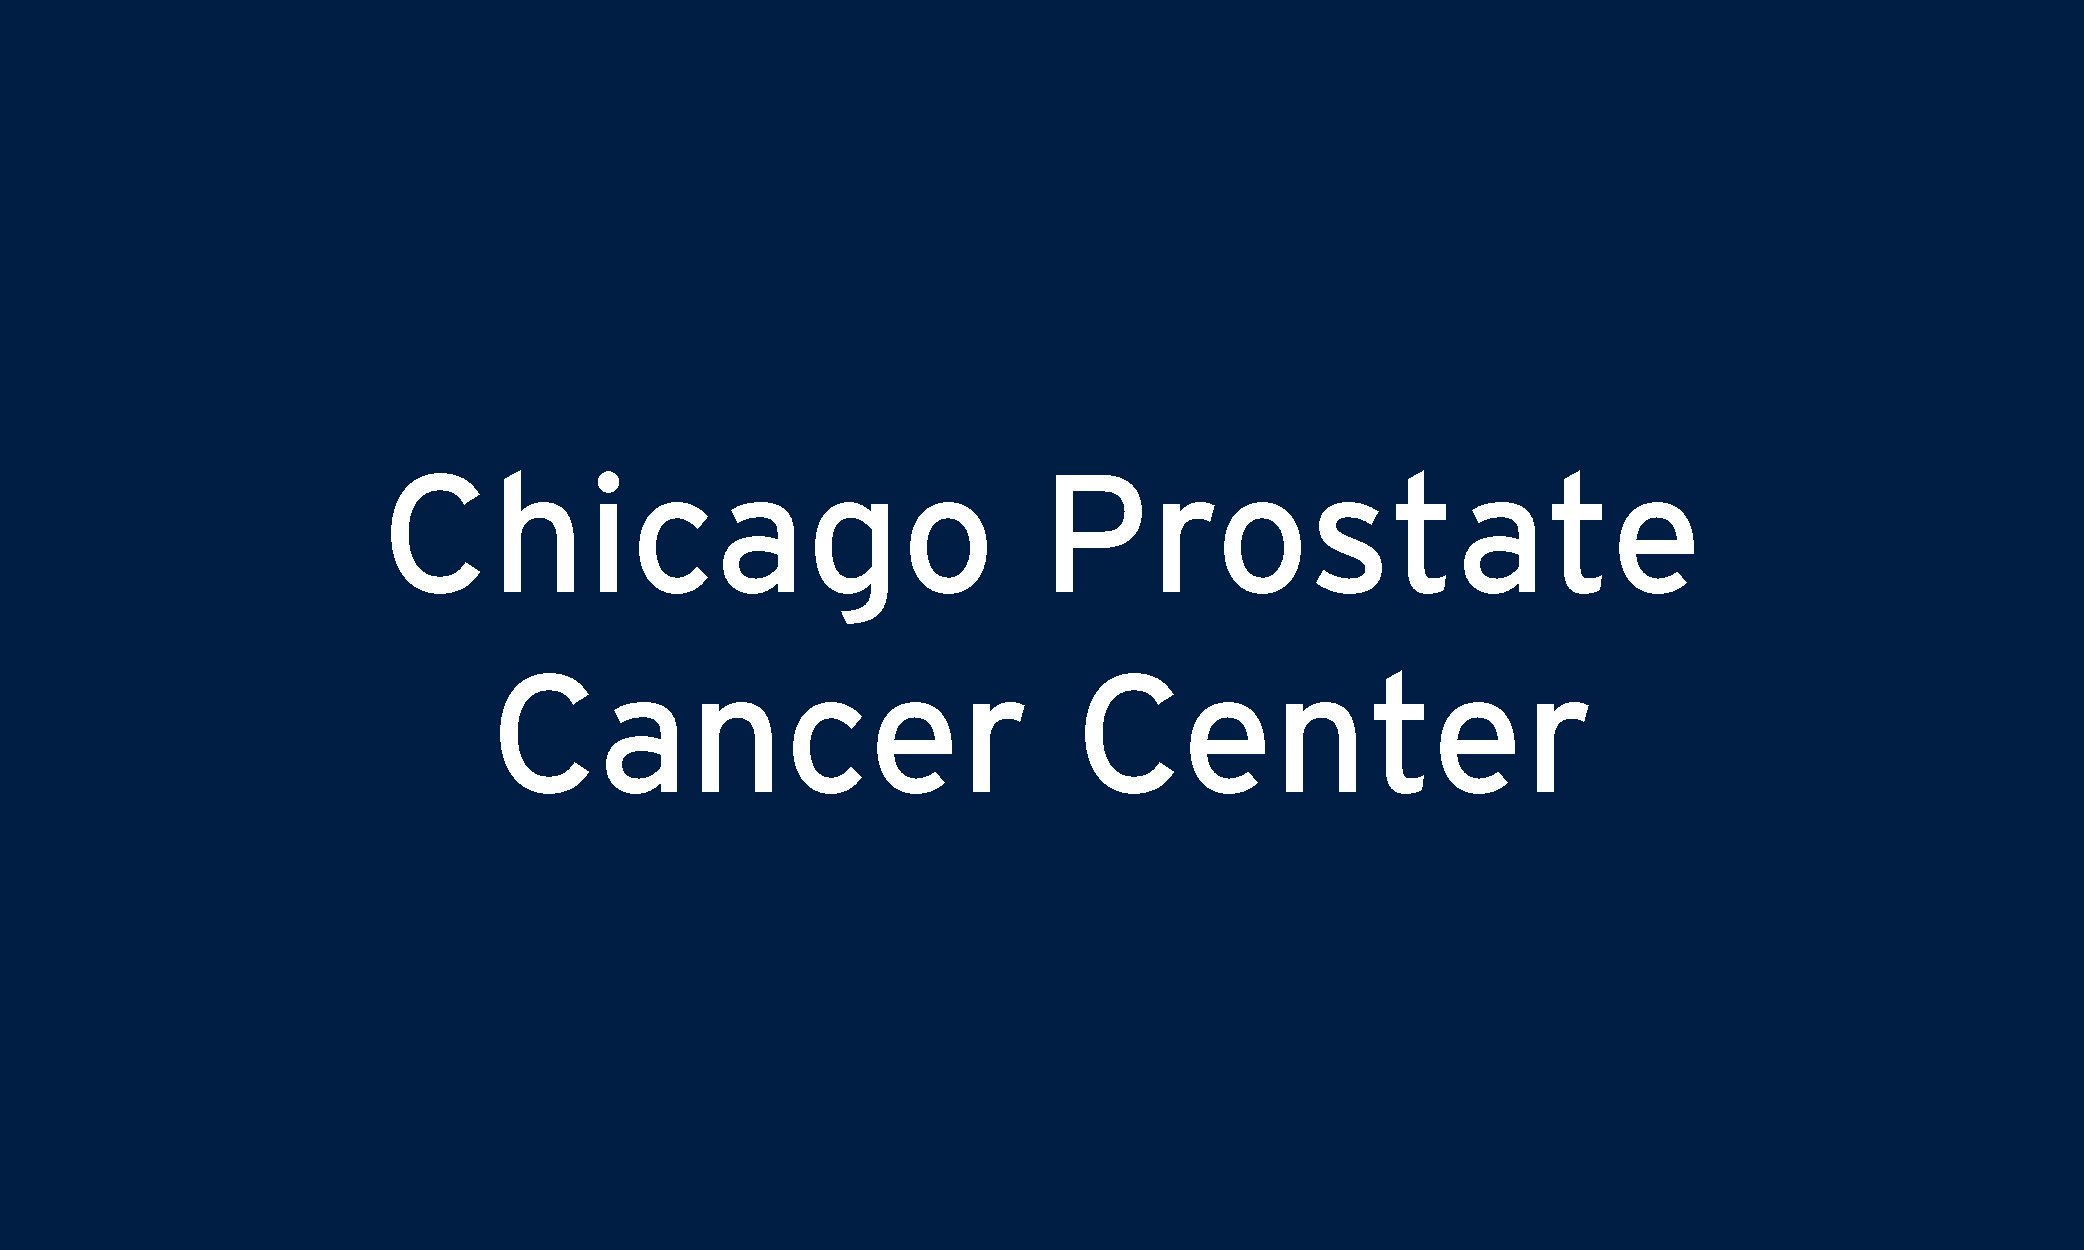 Chicago Prostate Cancer Center